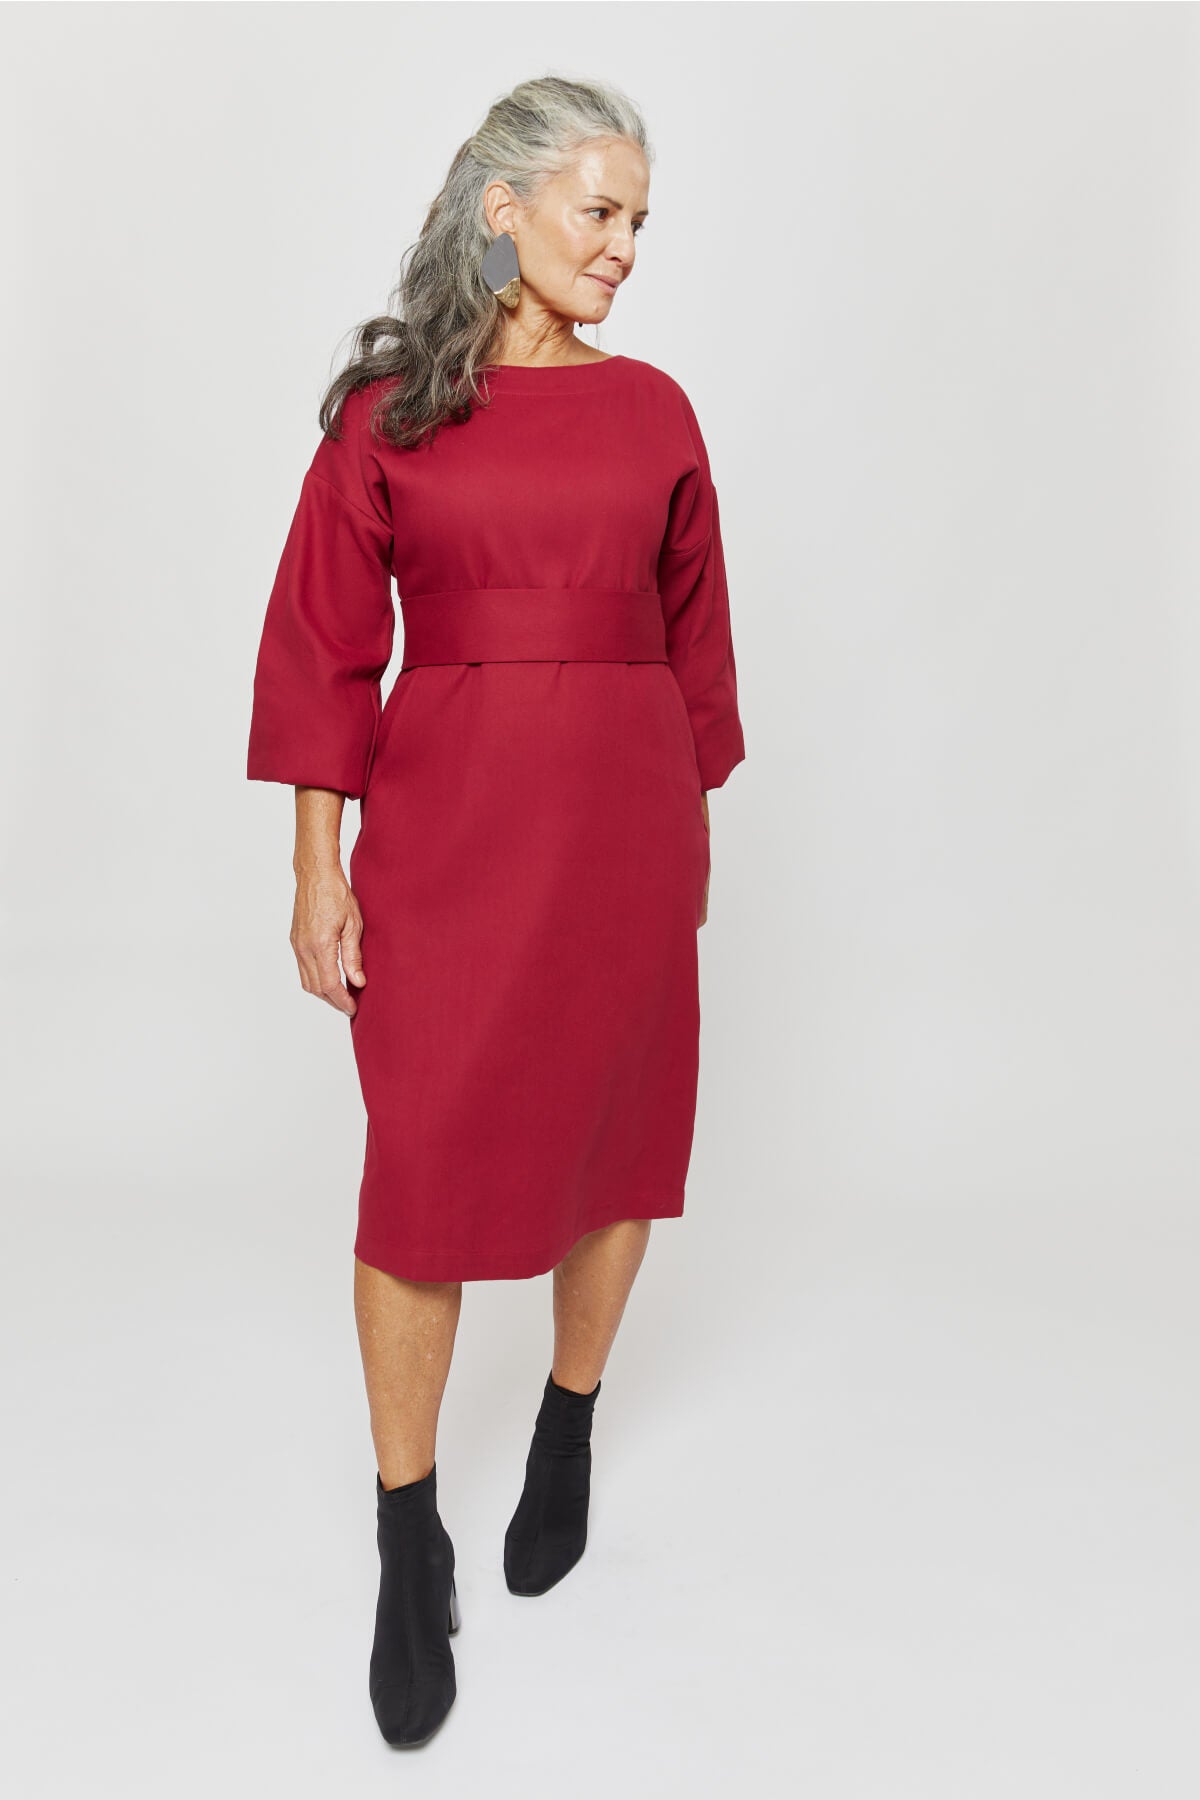 Stefanie | Winter Dress with Kimono Belt in Red-Bordo